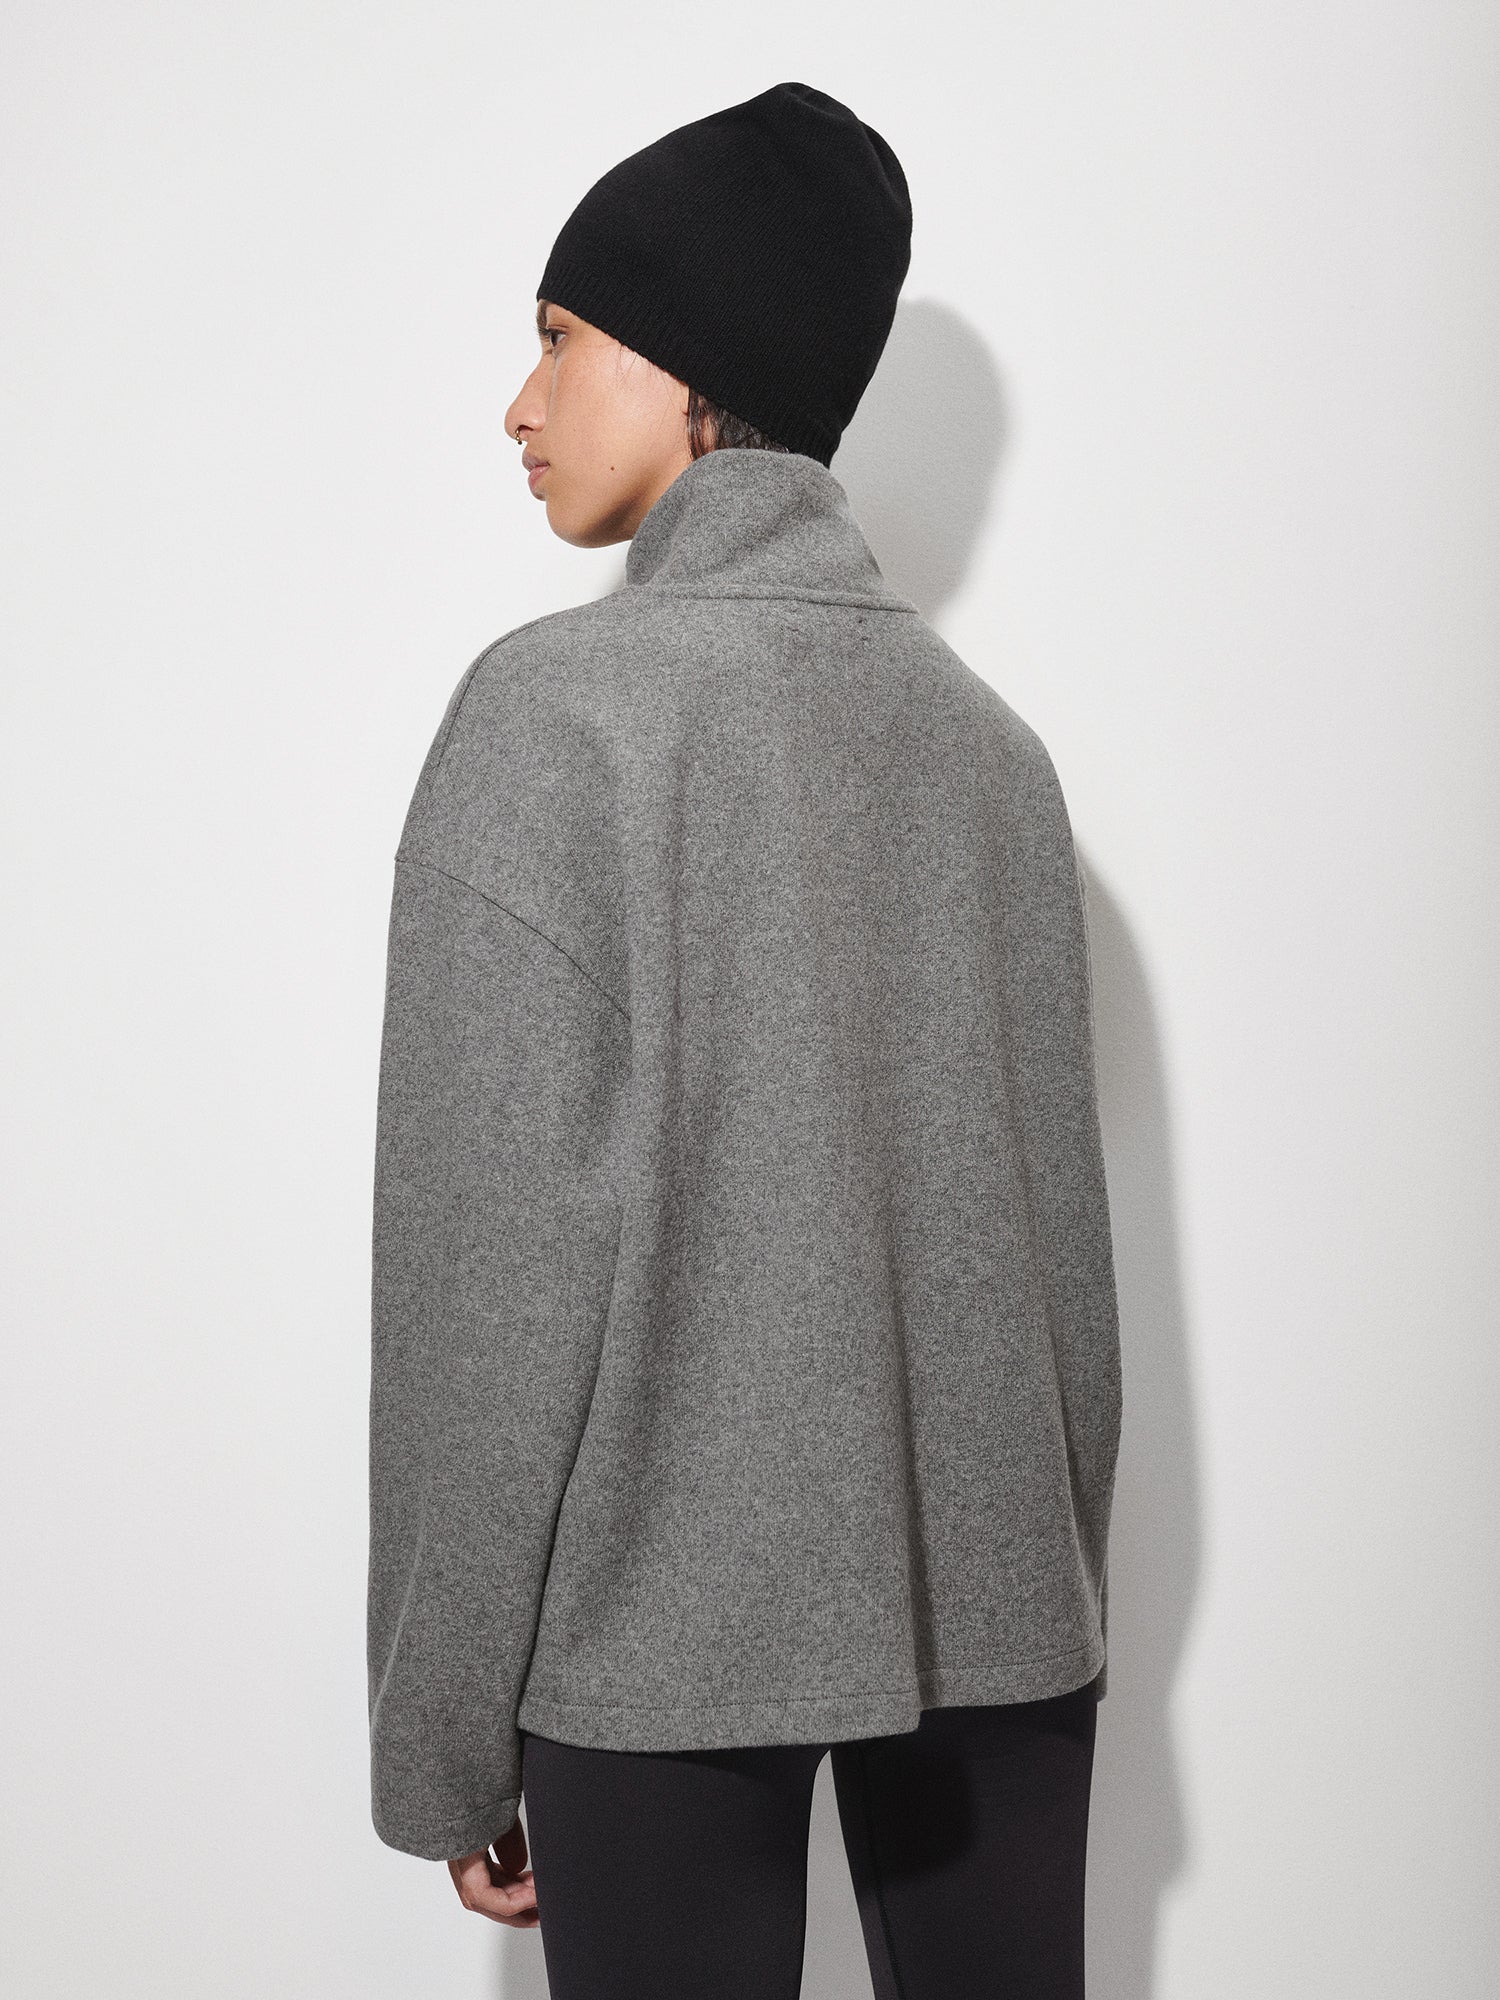 Wool-Jersey-Half-Zip-Sweatshirt-Volcanic-Grey-female-5